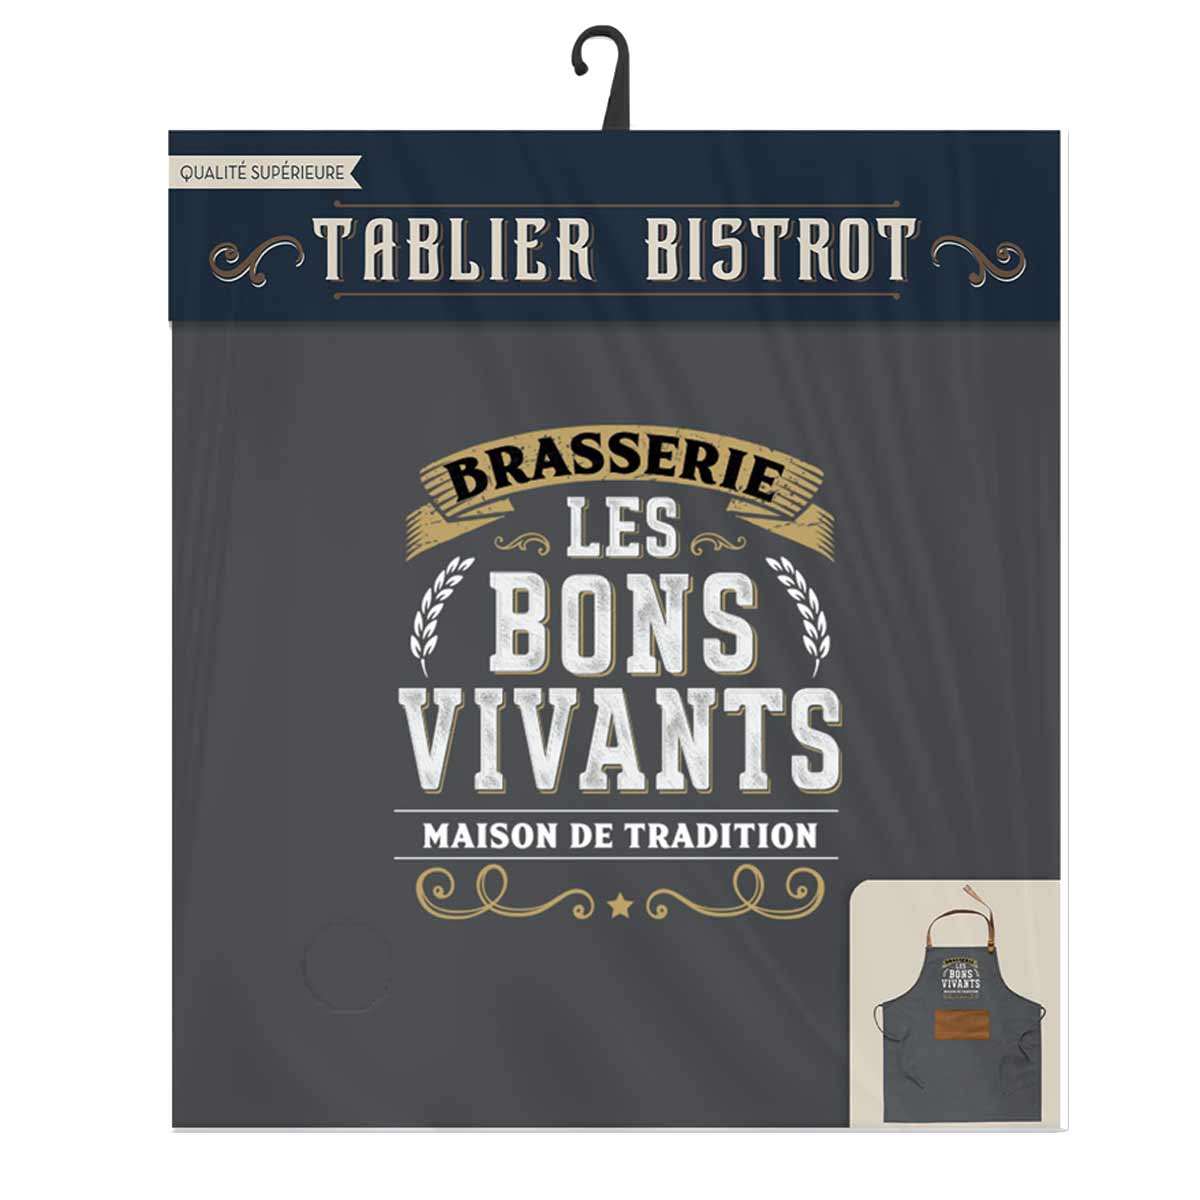 Brasserie bons vivants adult tie apron